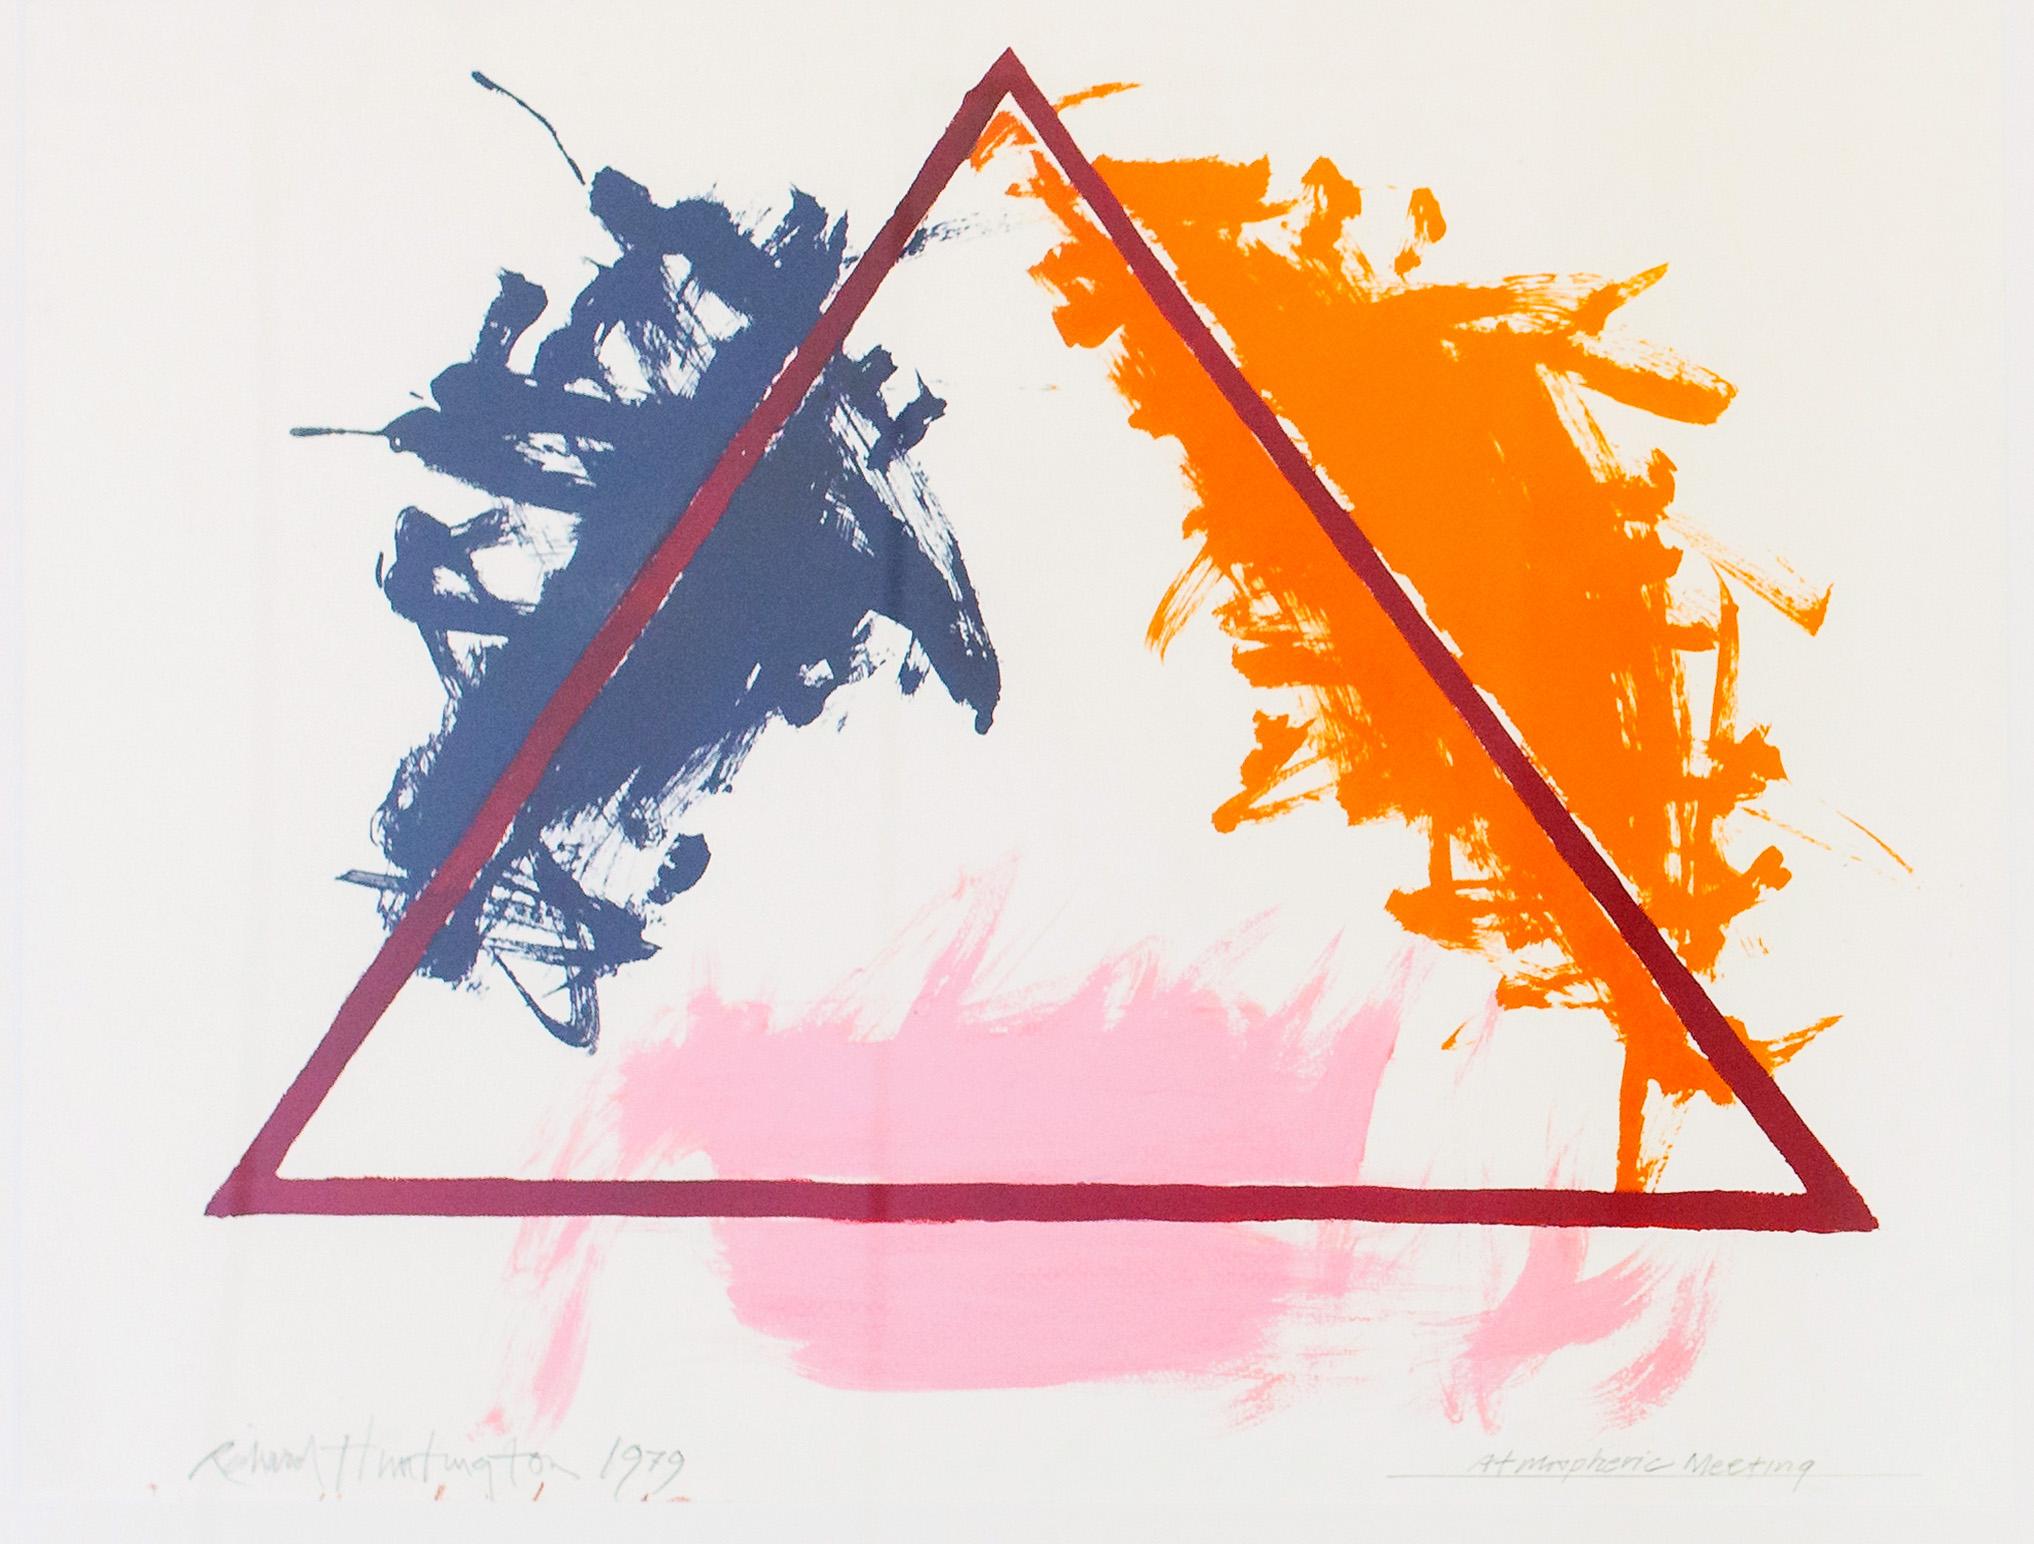 Triangle de peinture géométrique abstraite moderne américaine, encadrée et colorée, 1979 - Expressionnisme abstrait Painting par Richard Huntington